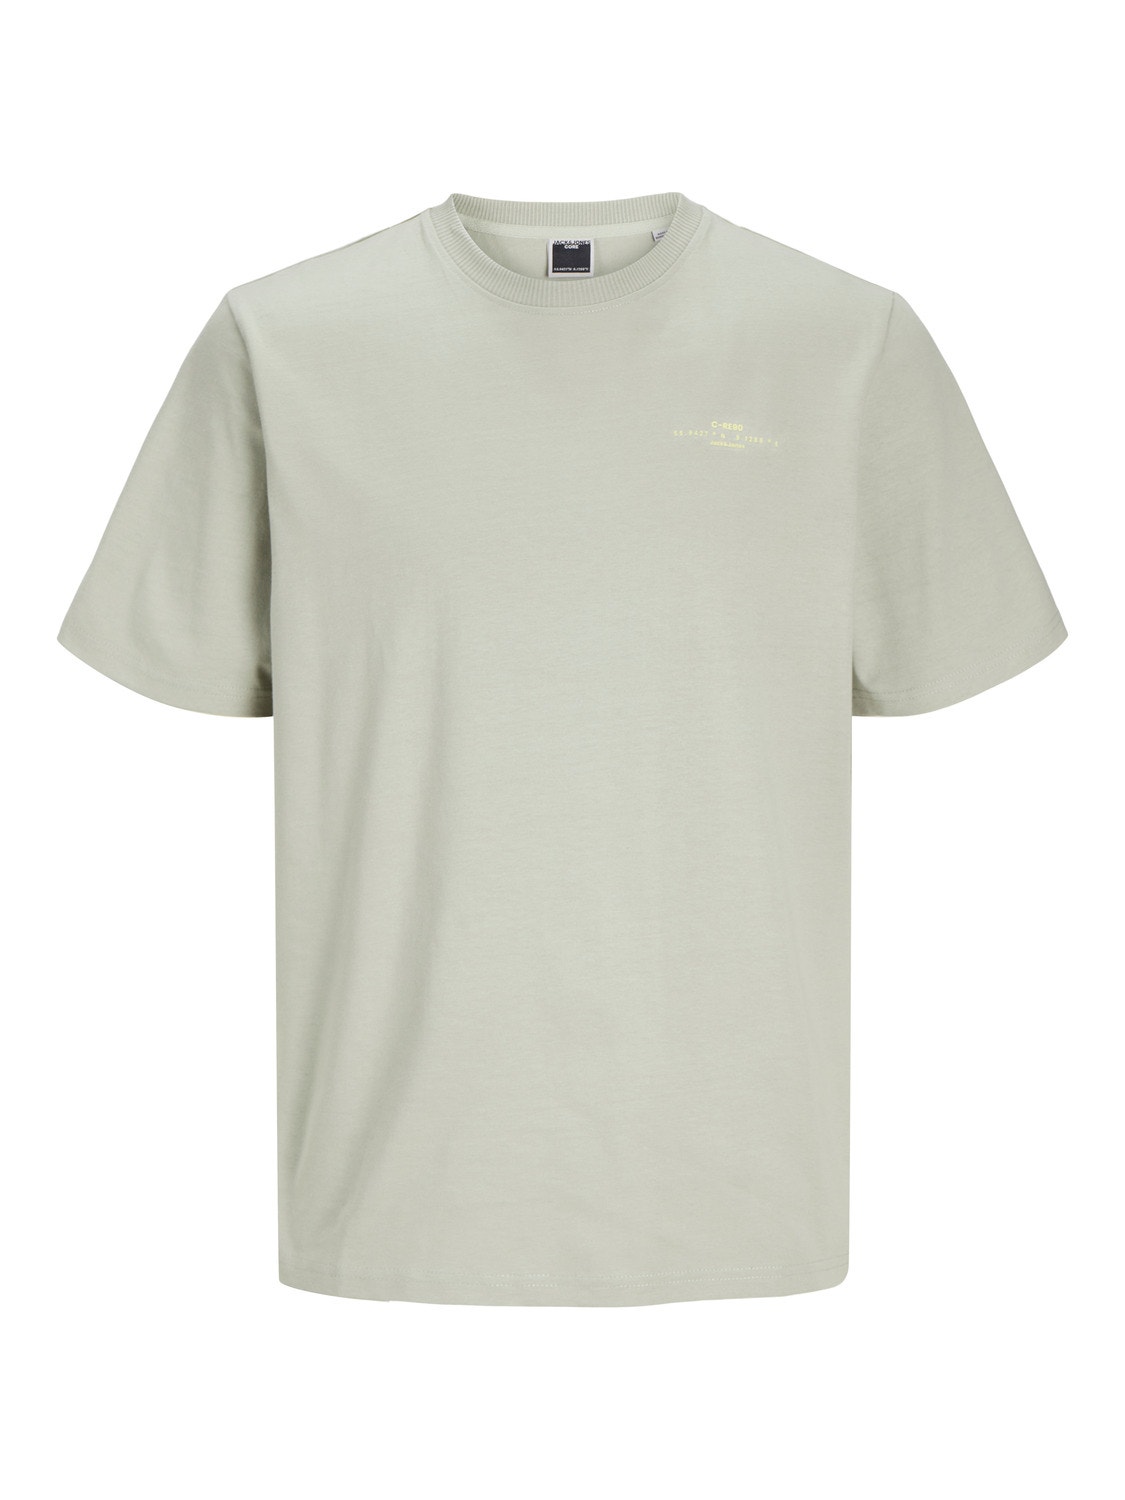 Jack & Jones Gedruckt Rundhals T-shirt -Desert Sage - 12256407